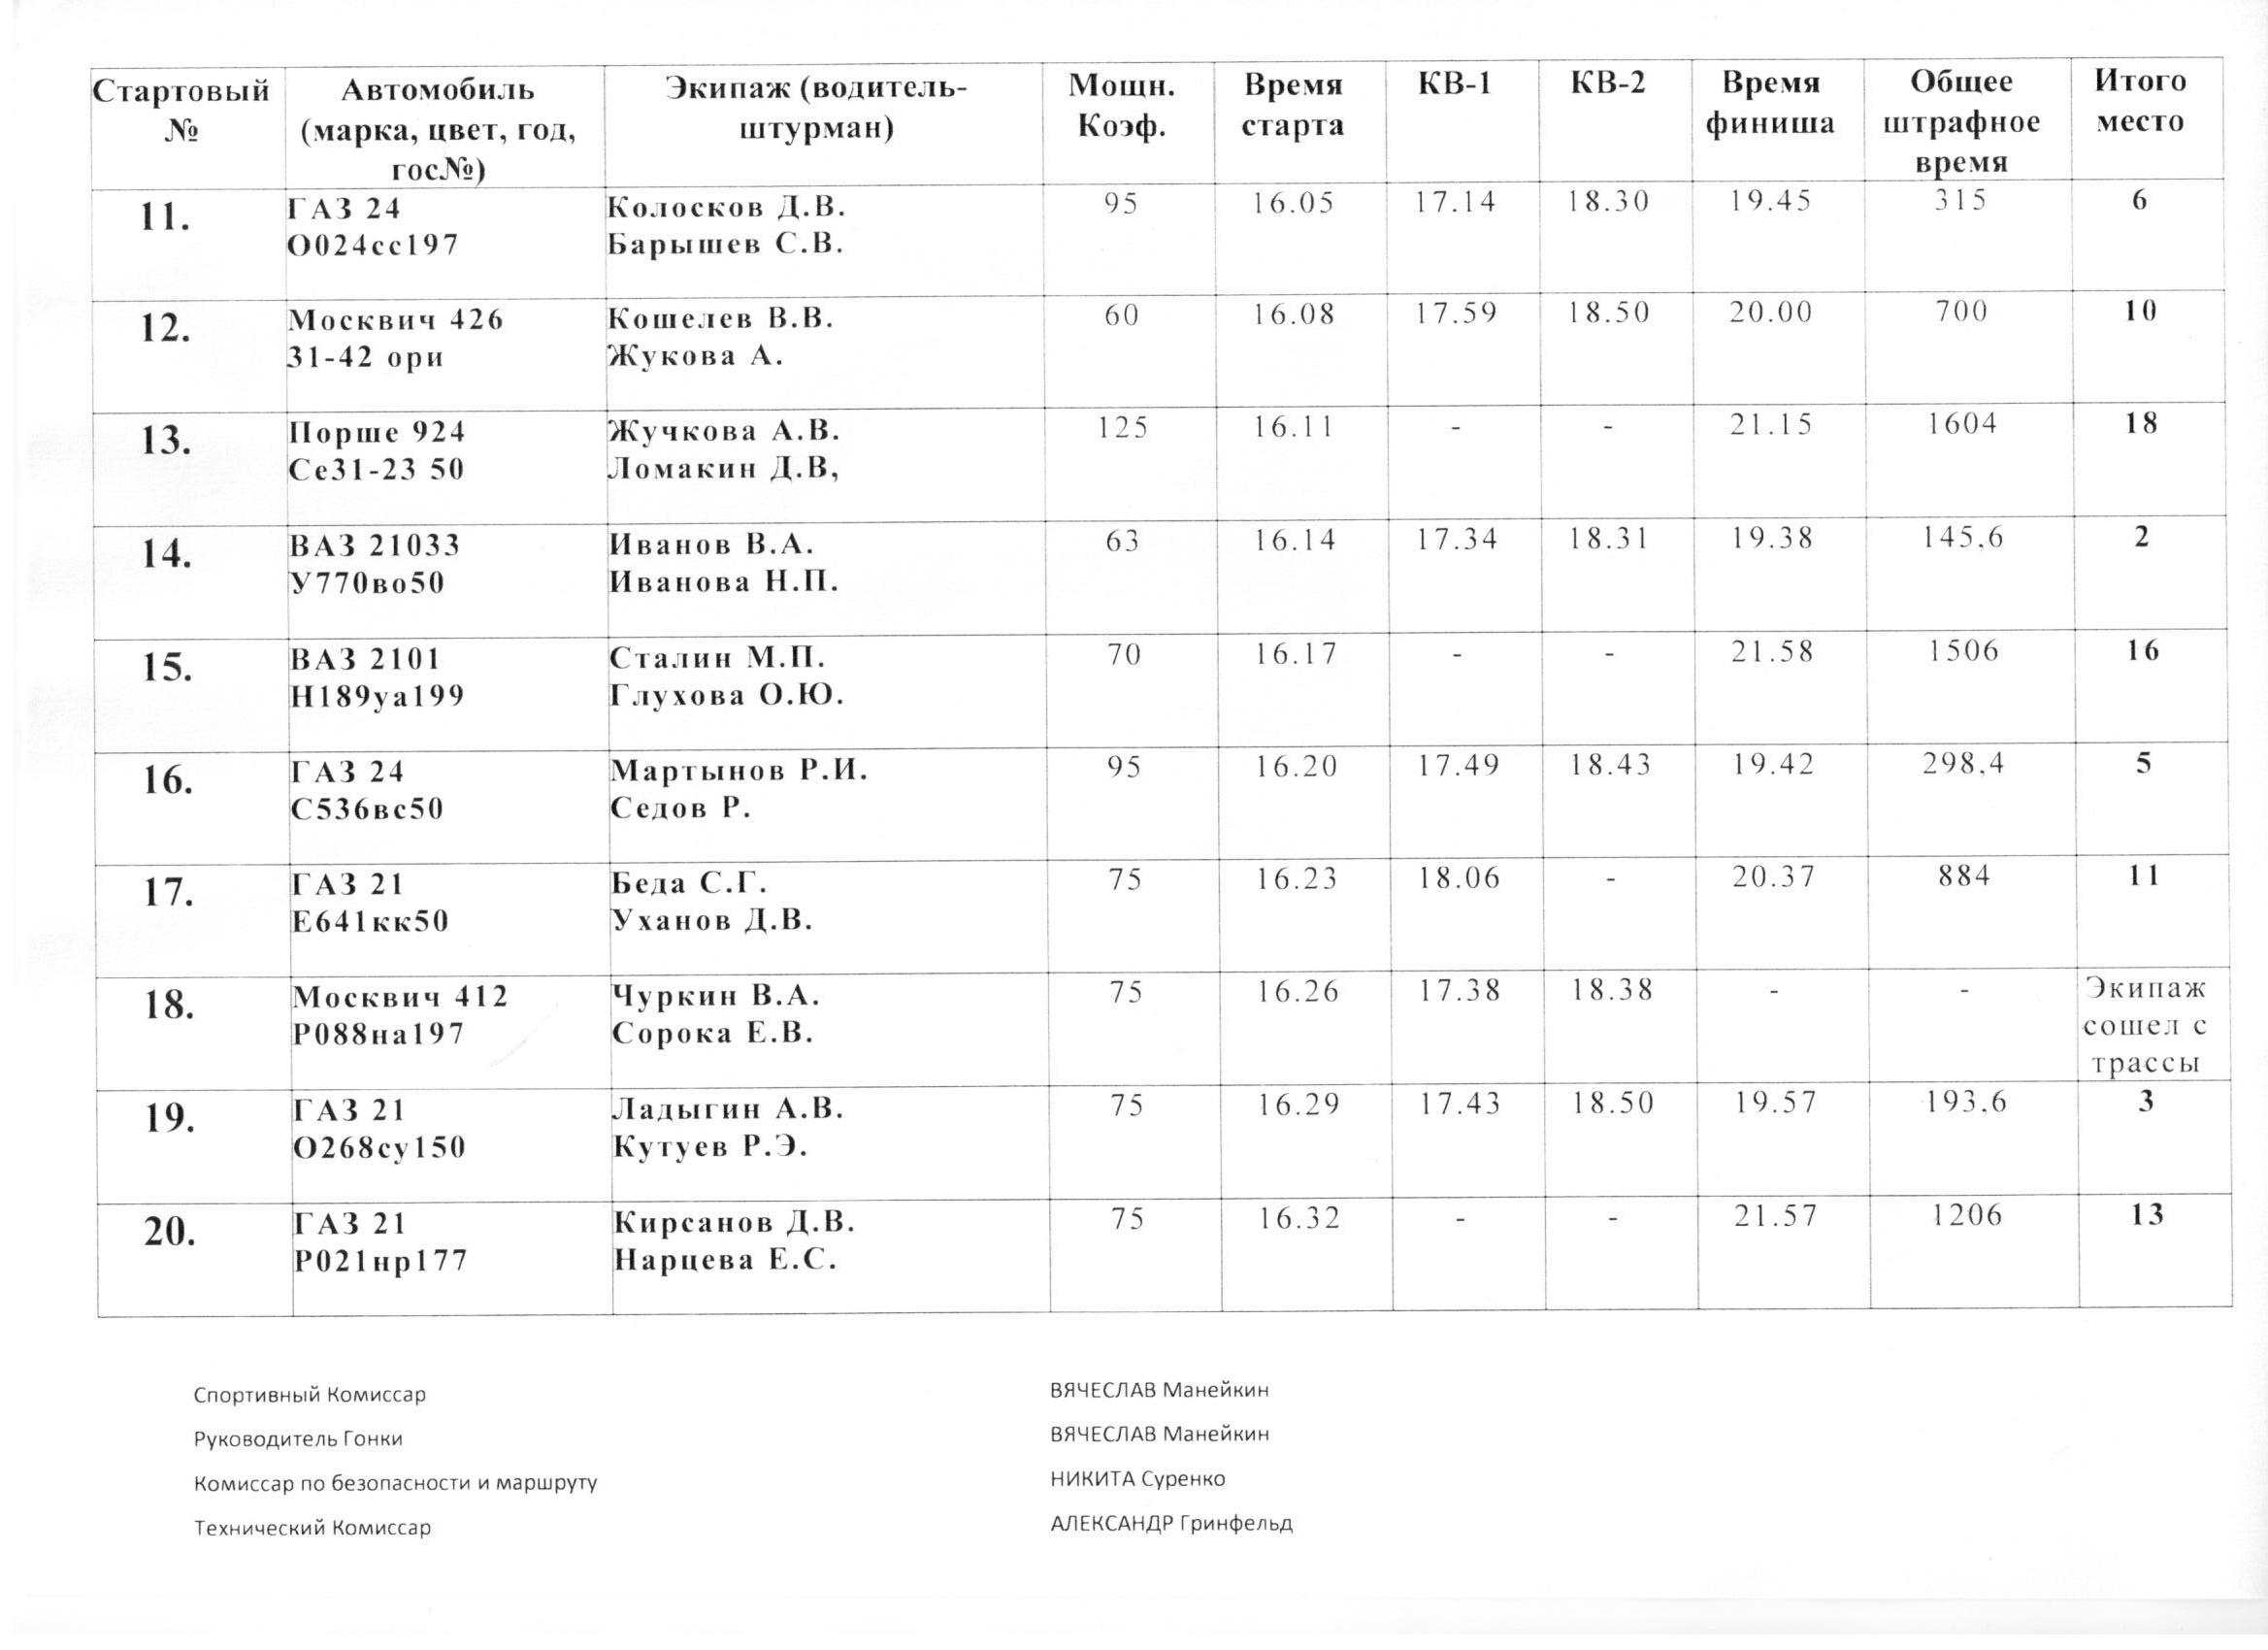 Таблица результатов Ралли Подольск 2012 Семь Дорог, лист 2.jpg